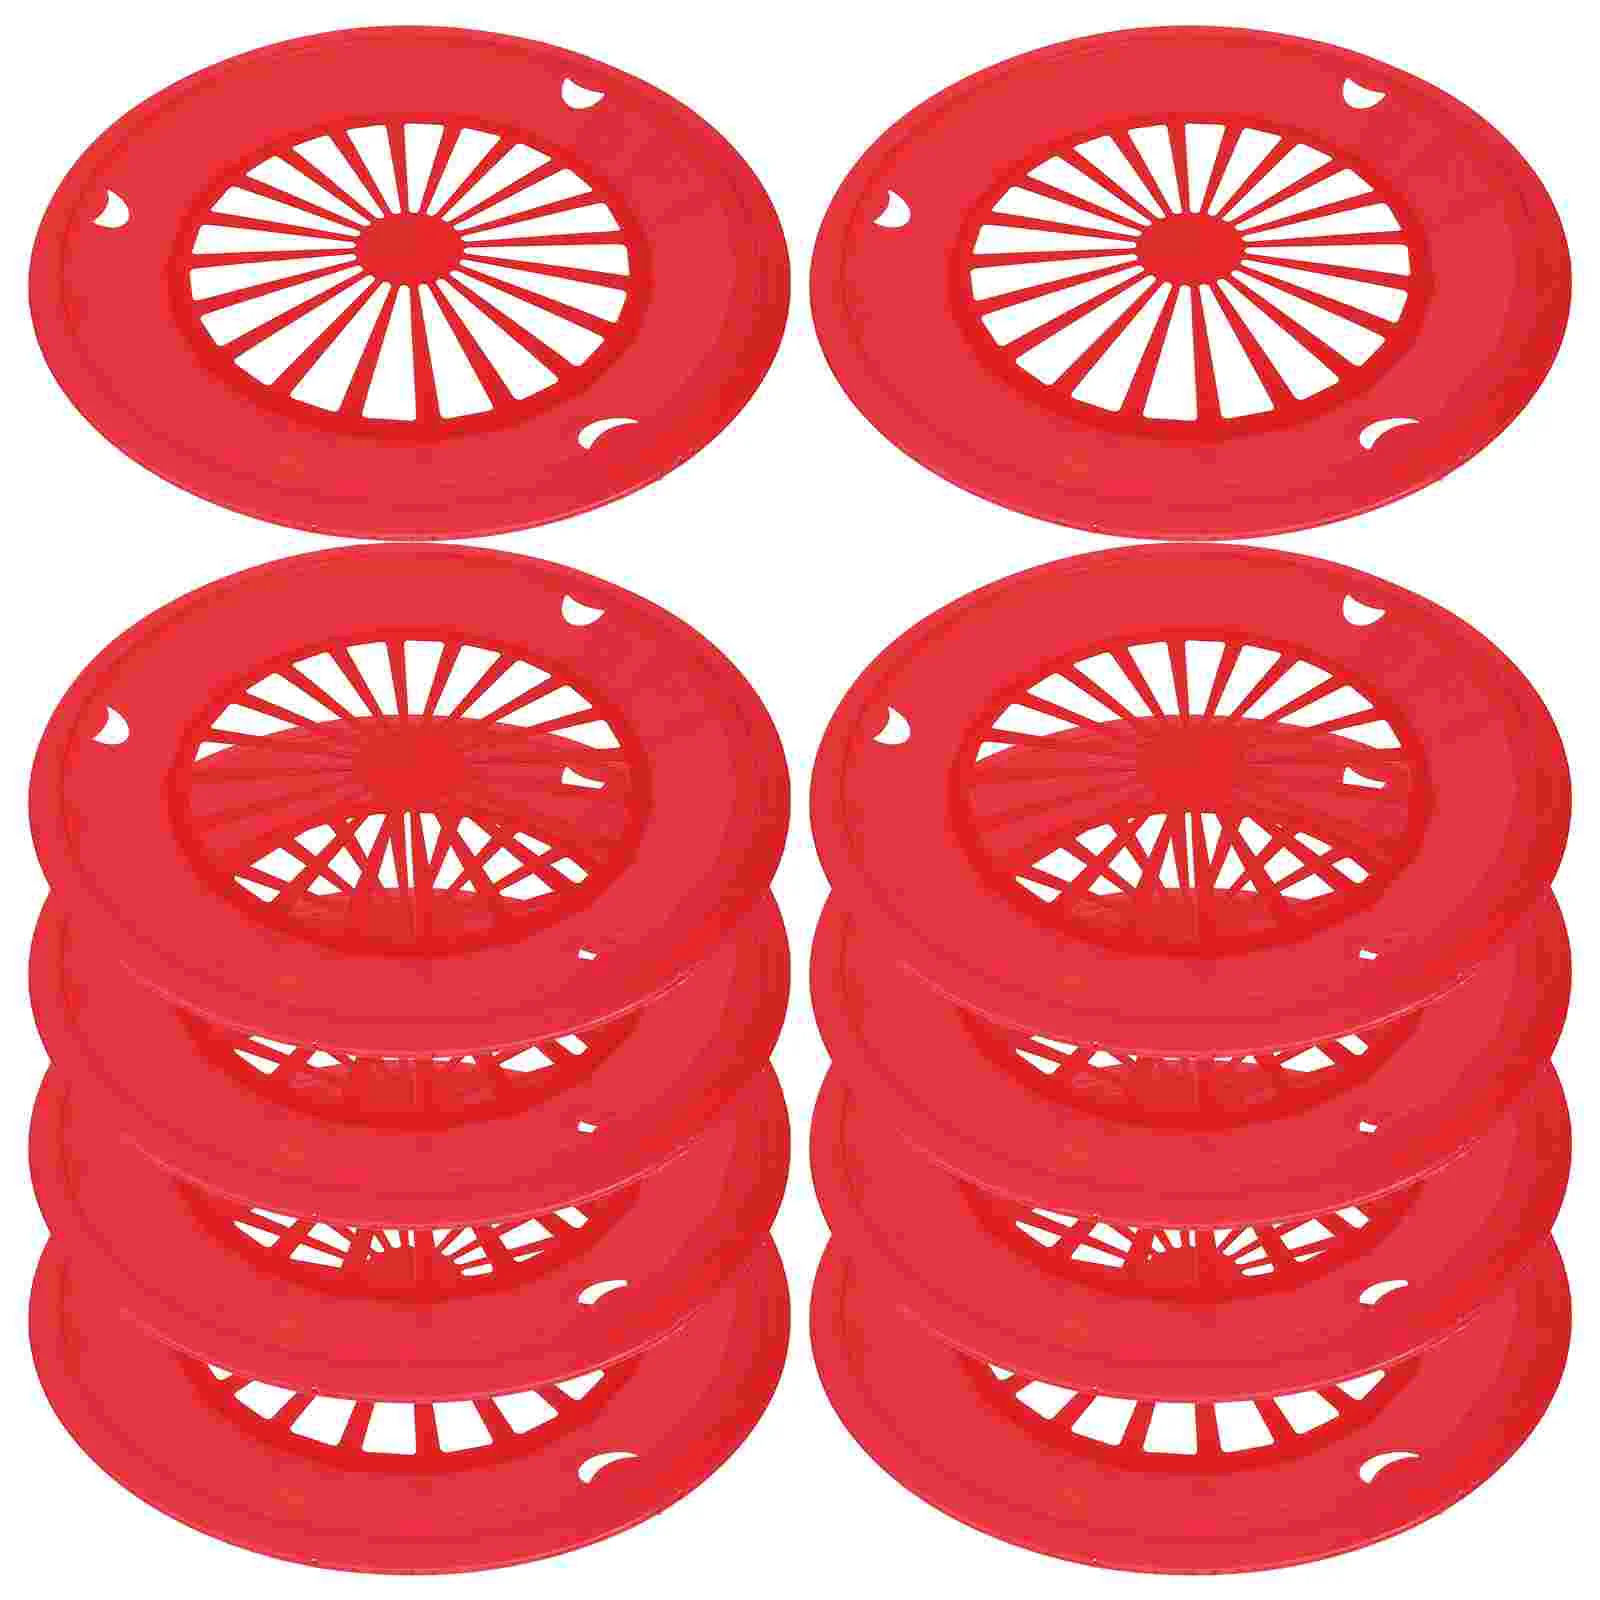 

10 шт. многоразовые бумажные тарелки, круглые полые держатели тарелок, бумажные тарелки, лотки для столовой посуды, для пикника на открытом воздухе